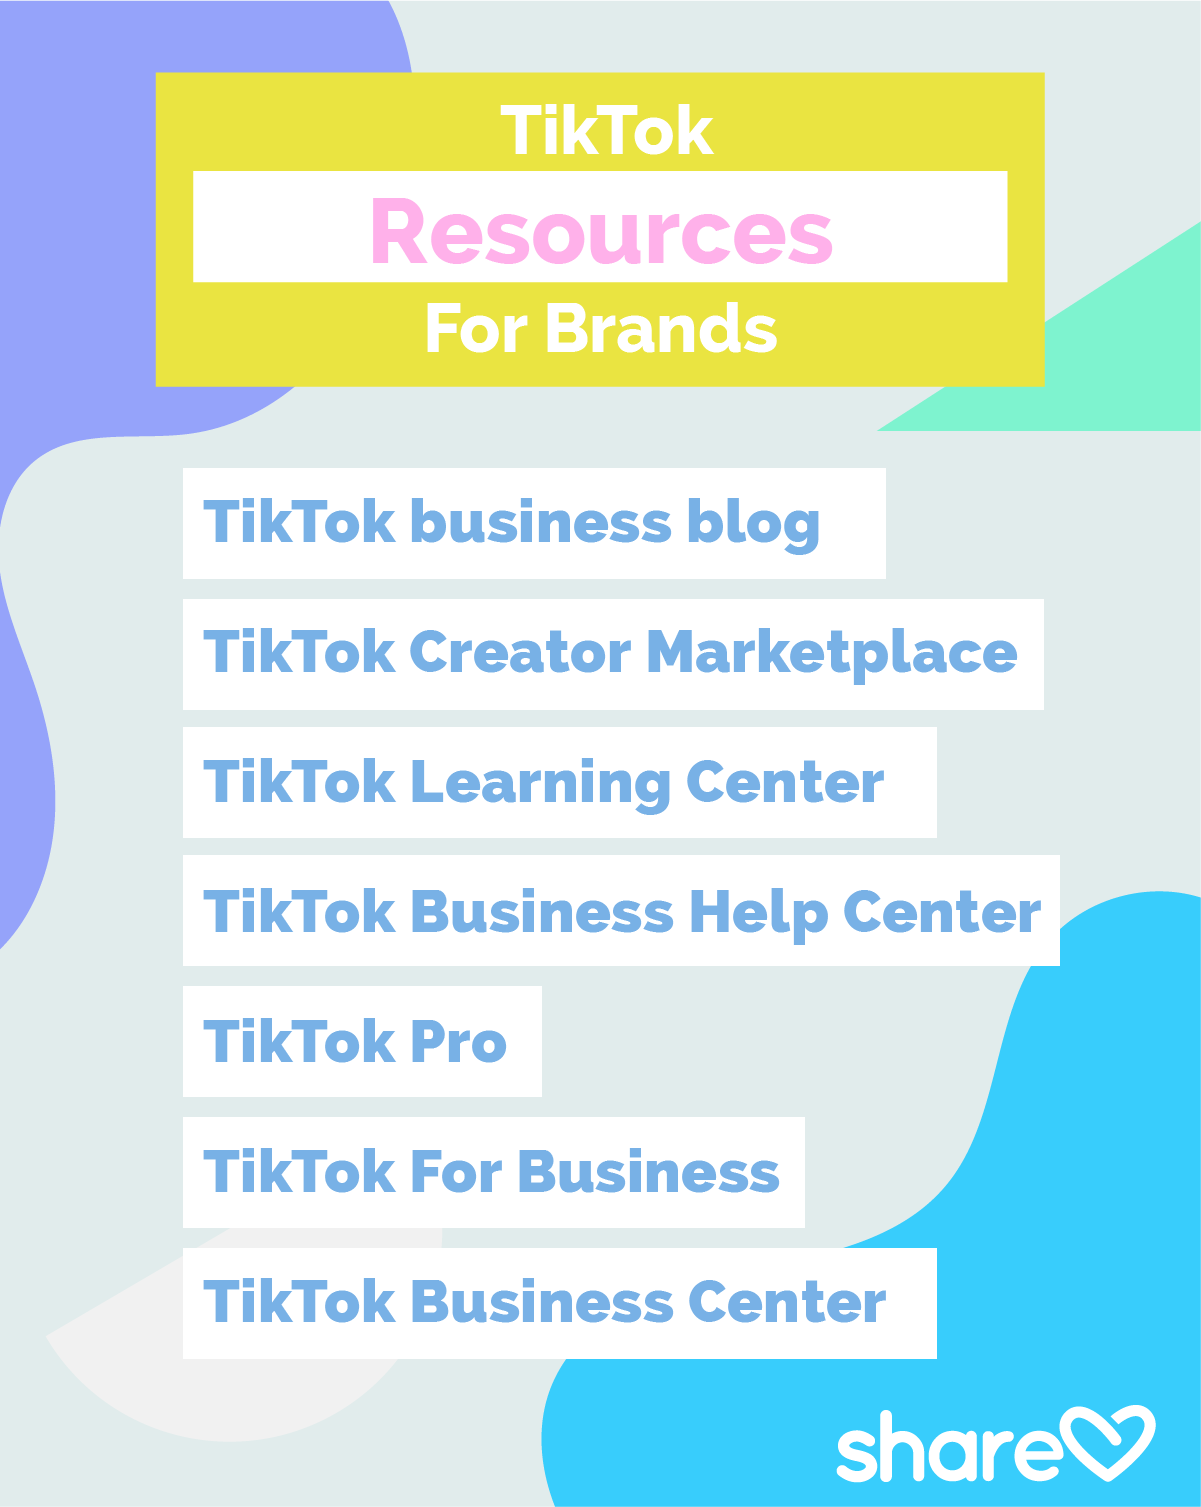 TikTok Resources for Brands